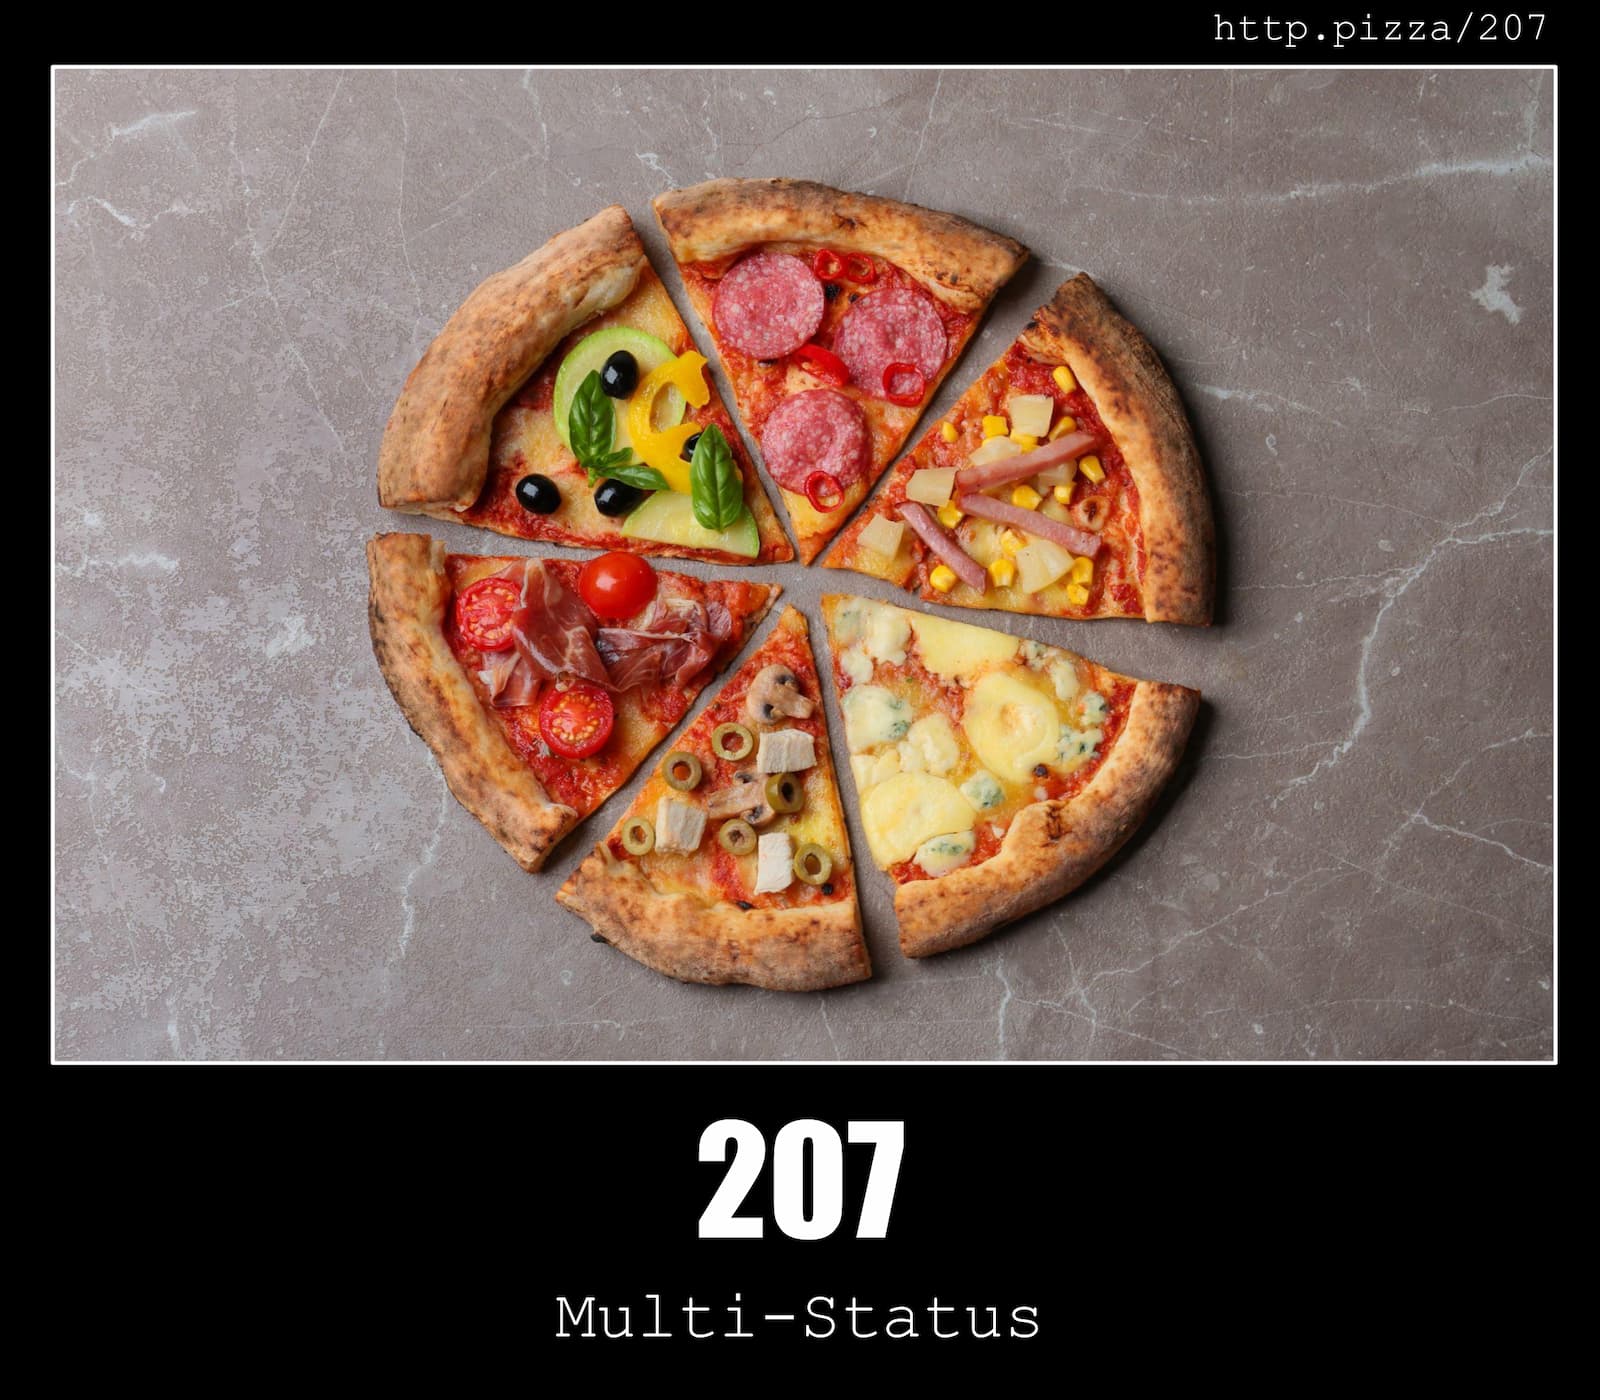 HTTP Status Code 207 Multi-Status & Pizzas